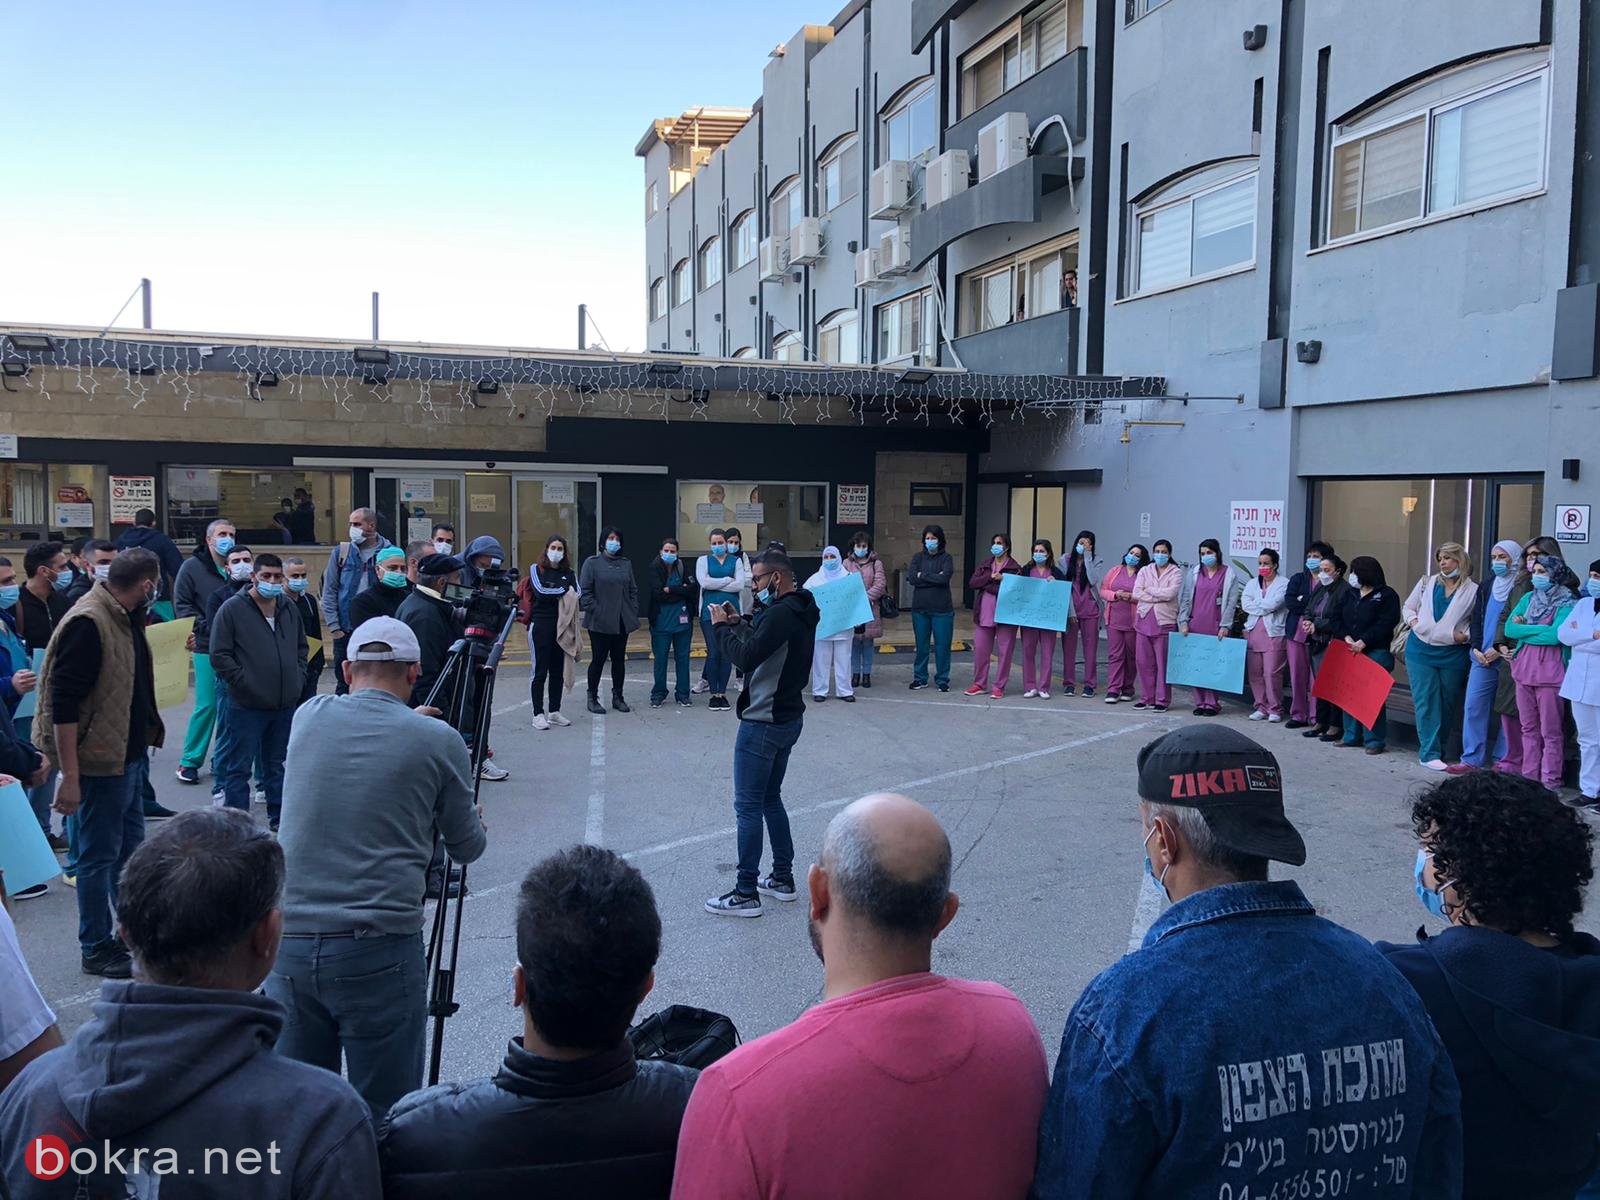 الممرضون والممرضات في مستشفى العائلة المقدسة يتظاهرون ضد إدارة المستشفى-14